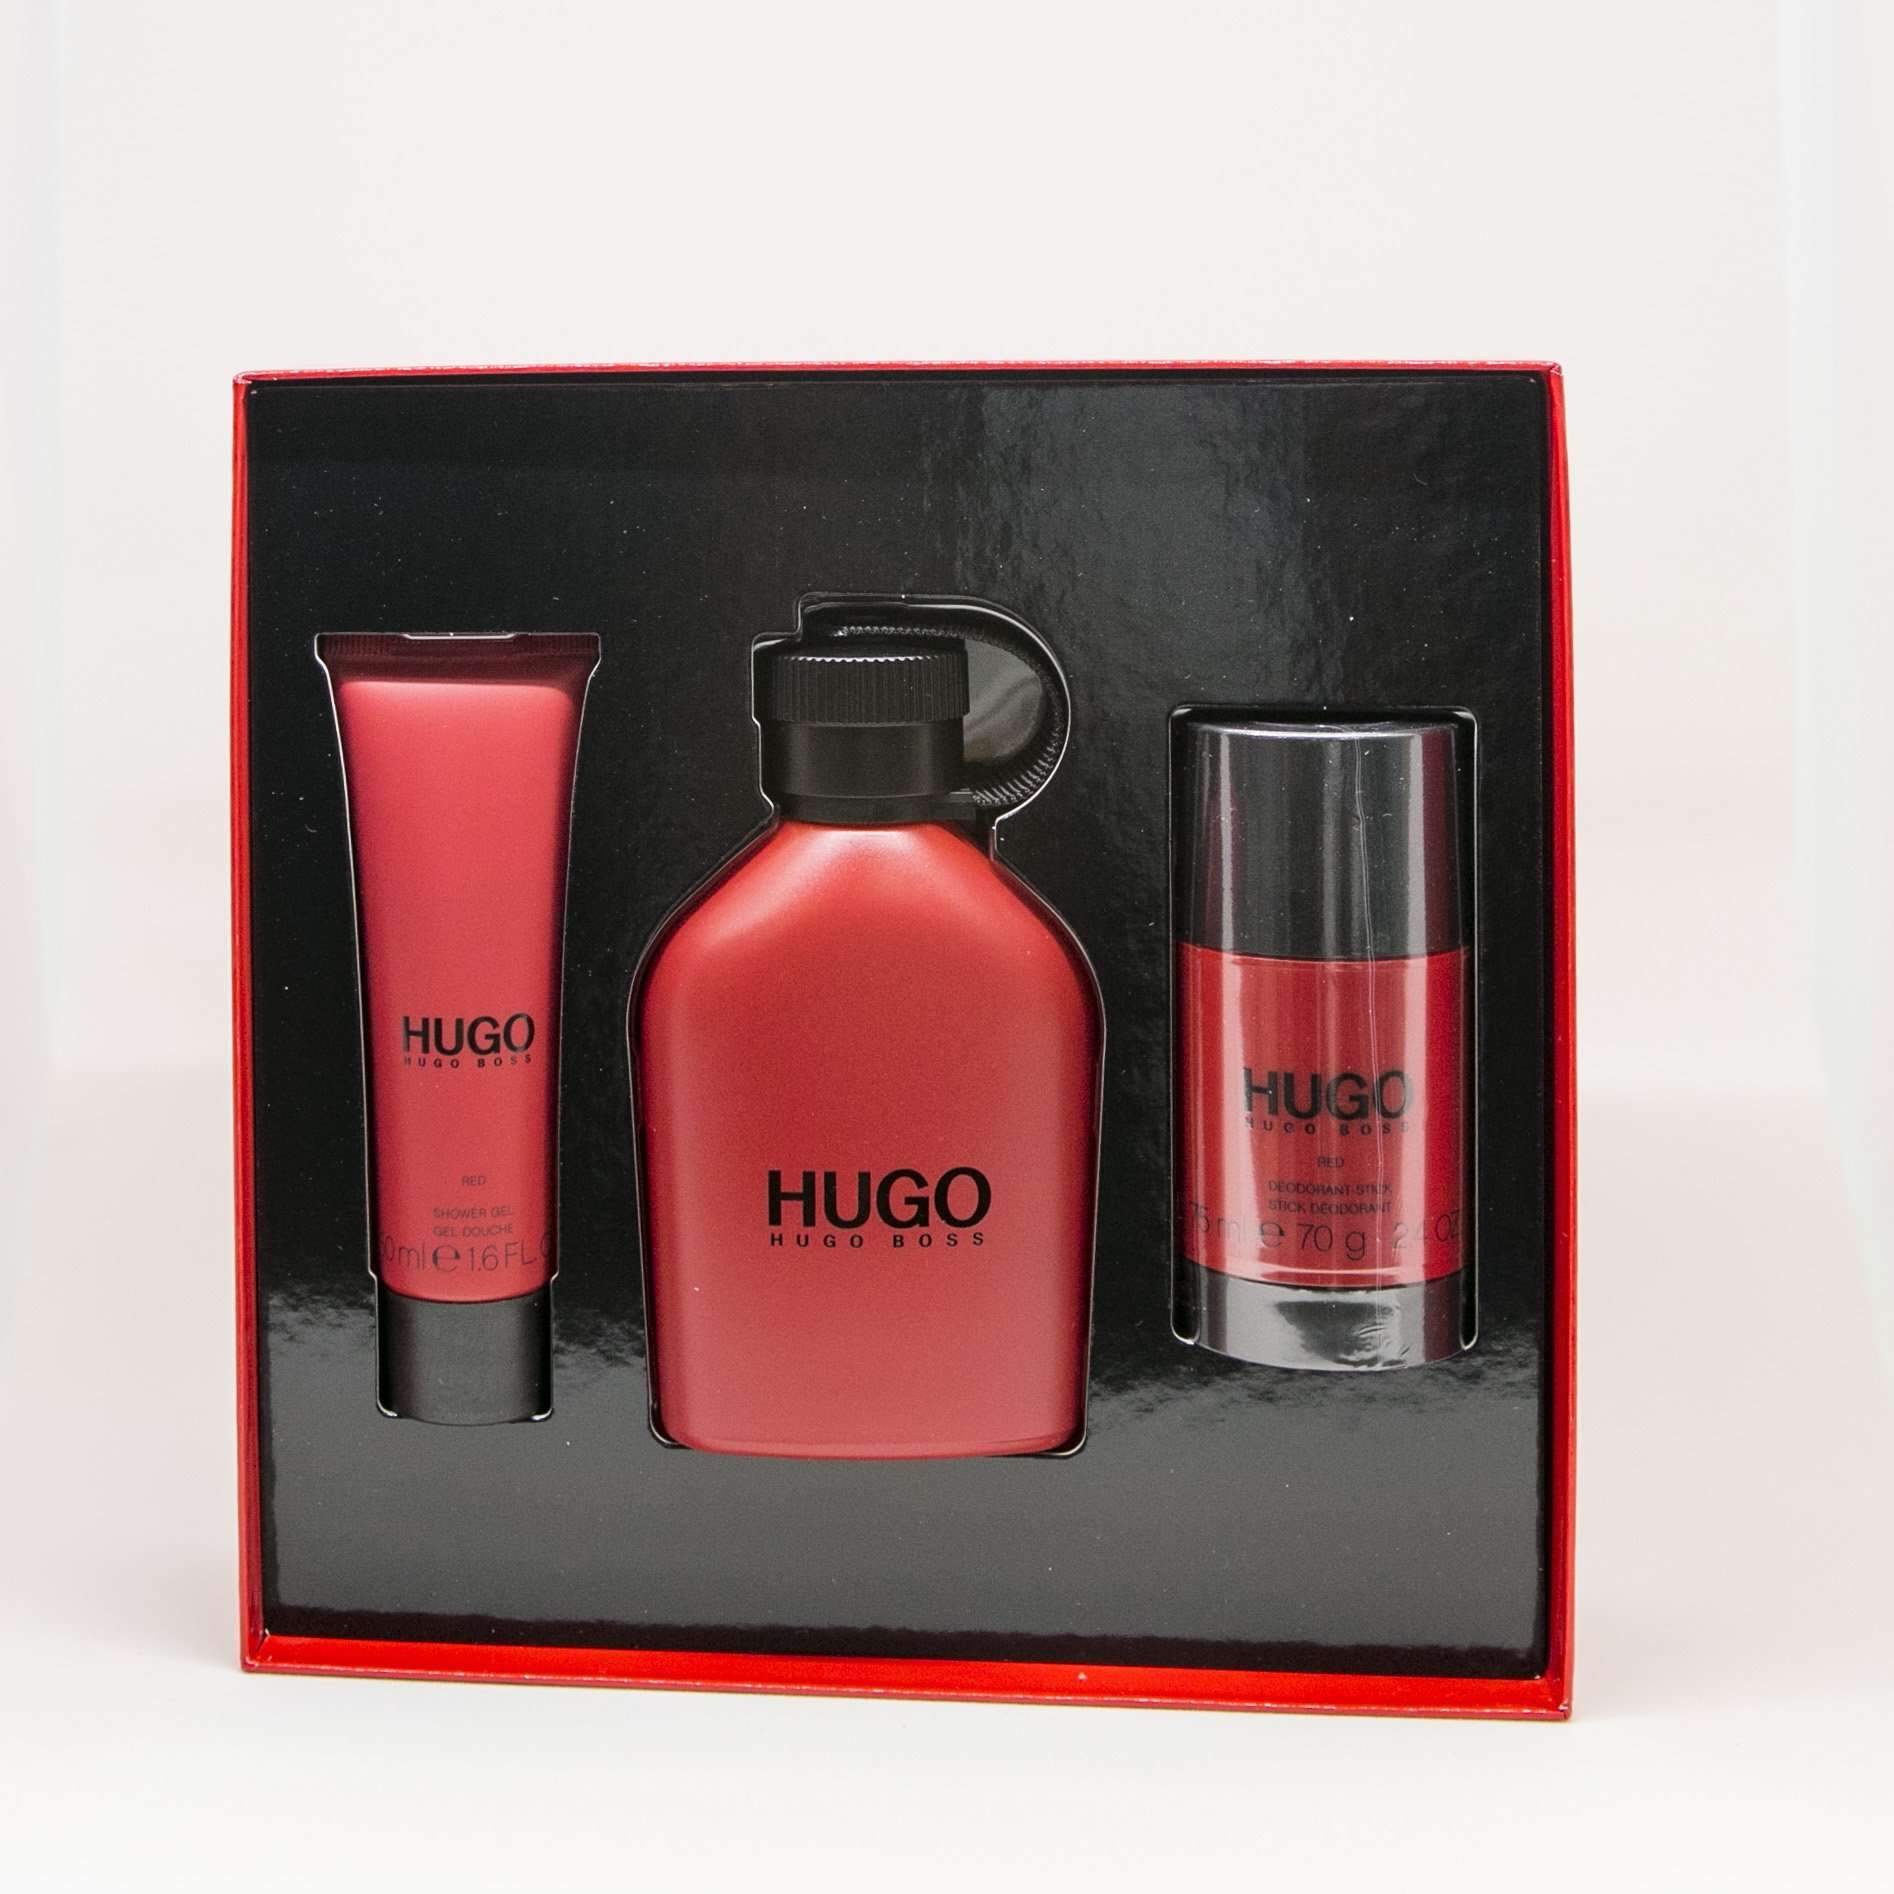 hugo boss men's fragrance gift sets